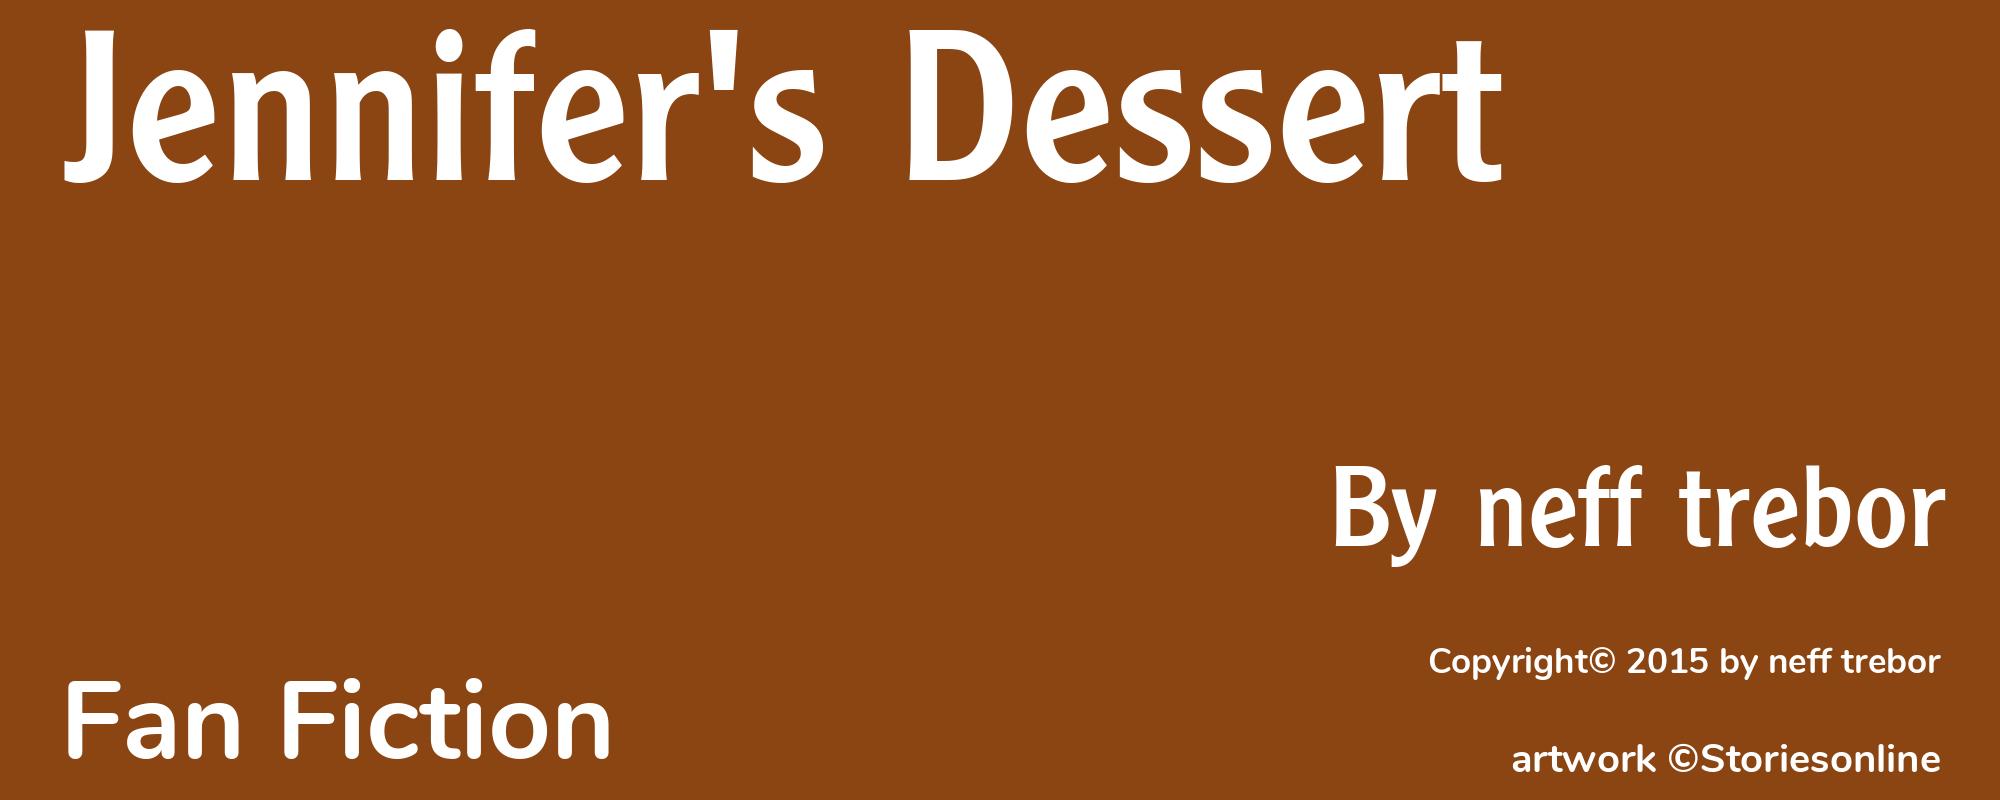 Jennifer's Dessert - Cover